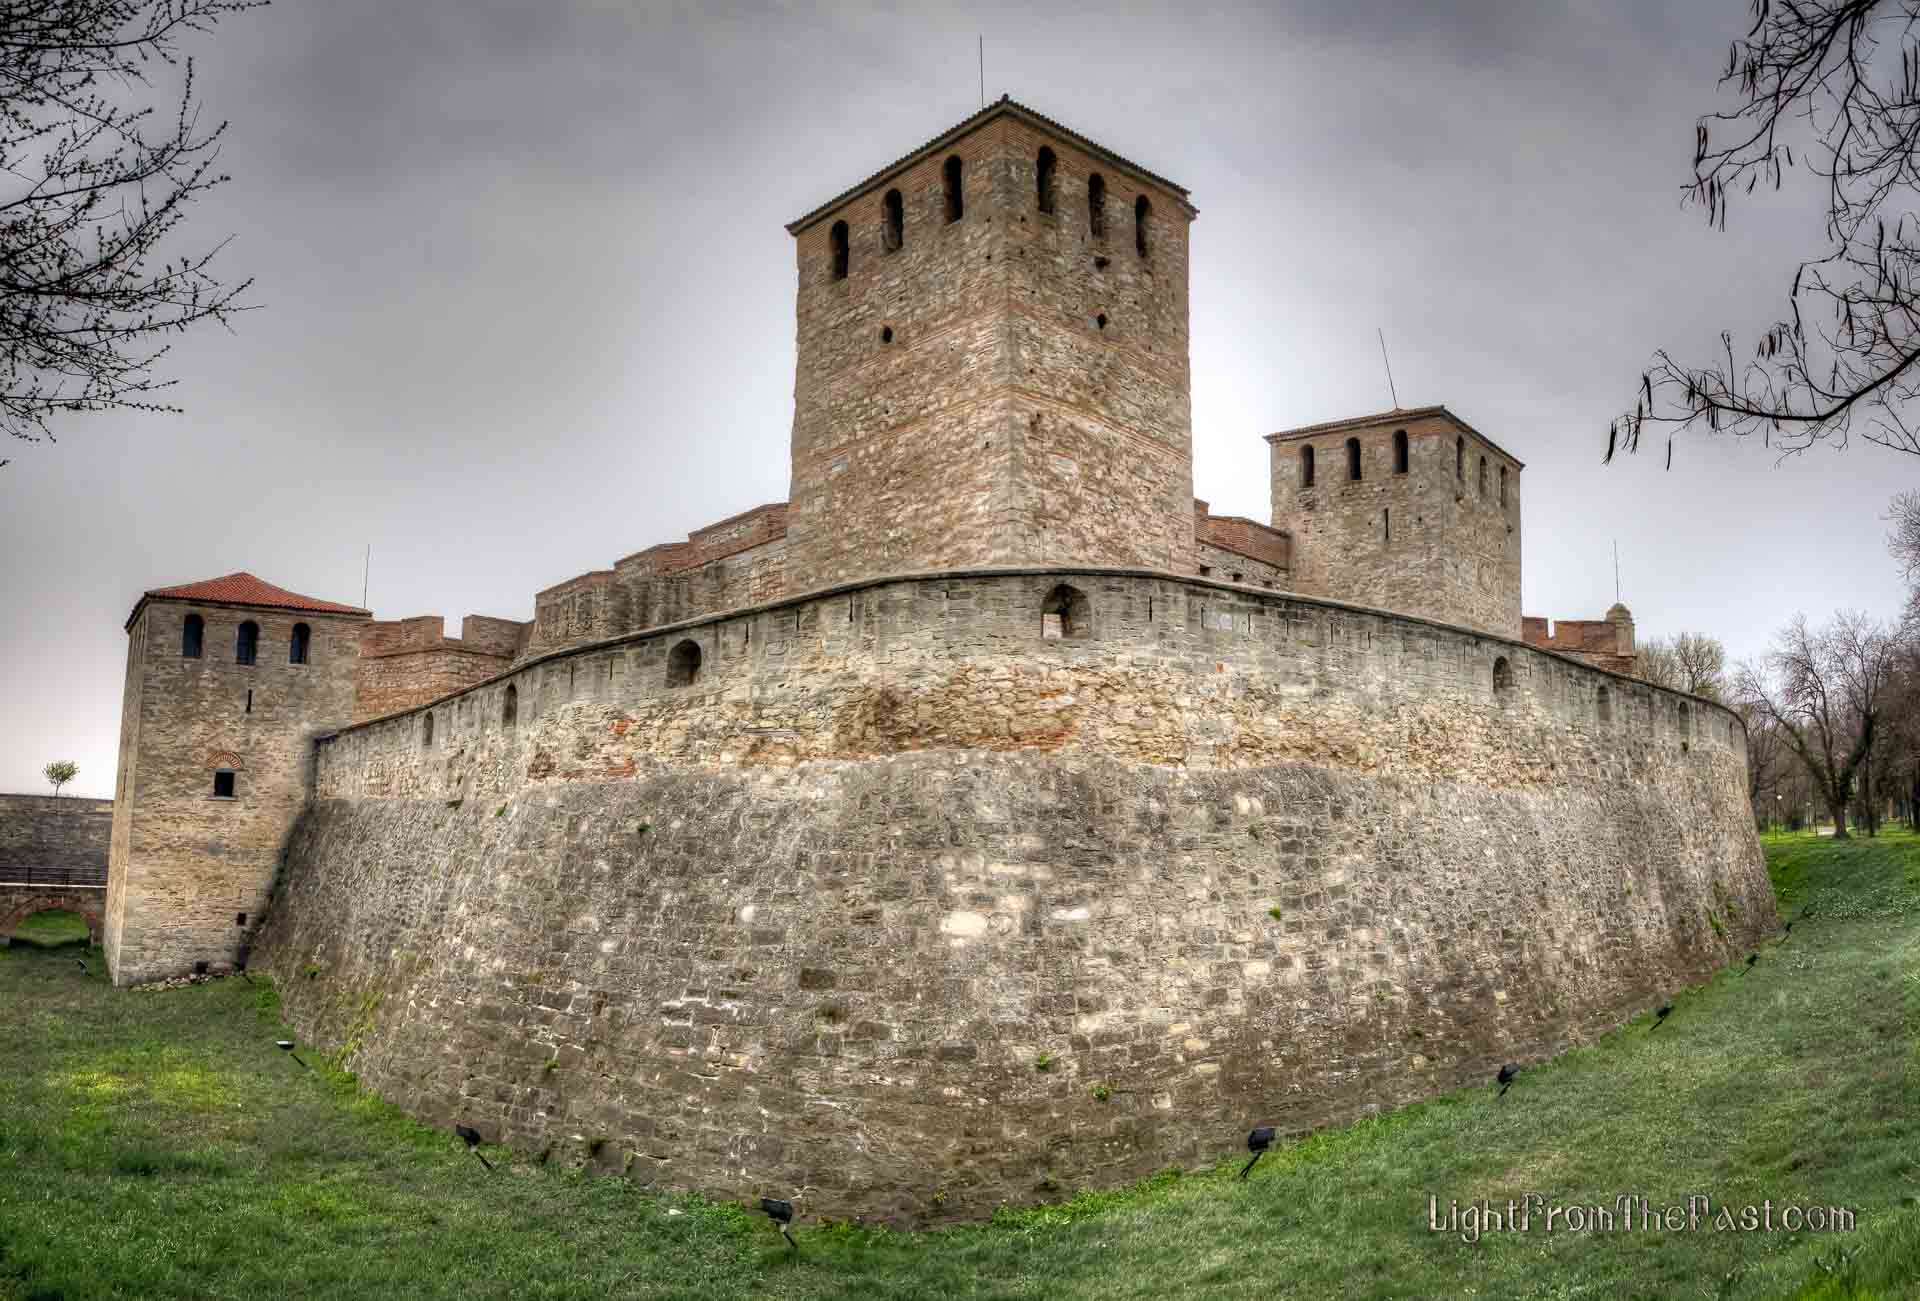  Част от стената на крепостта и кулите и. Страцимировата кула се вижда посредата.